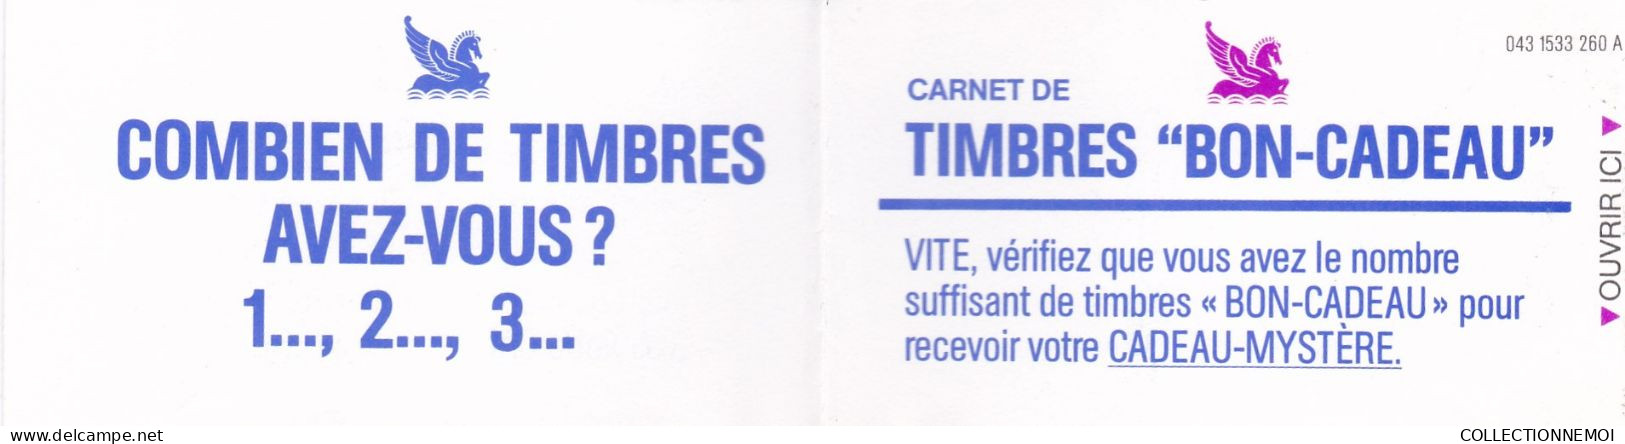 Petit Lot De Timbres De Vignettes - Kilowaar (max. 999 Zegels)